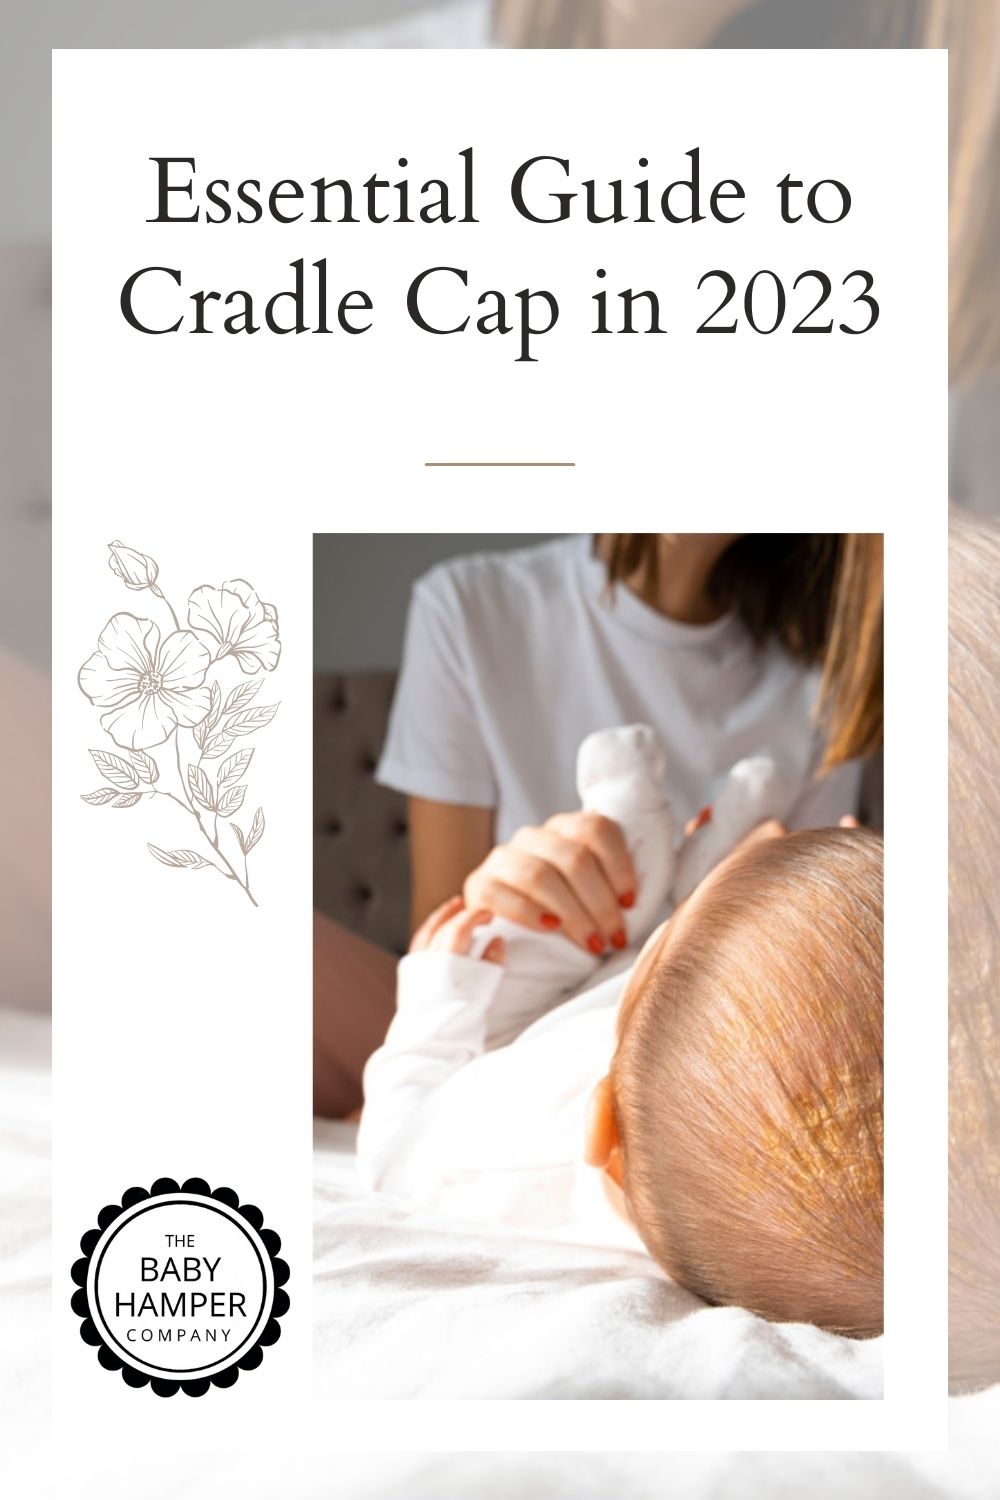 Essential Guide to Cradle Cap in 2023